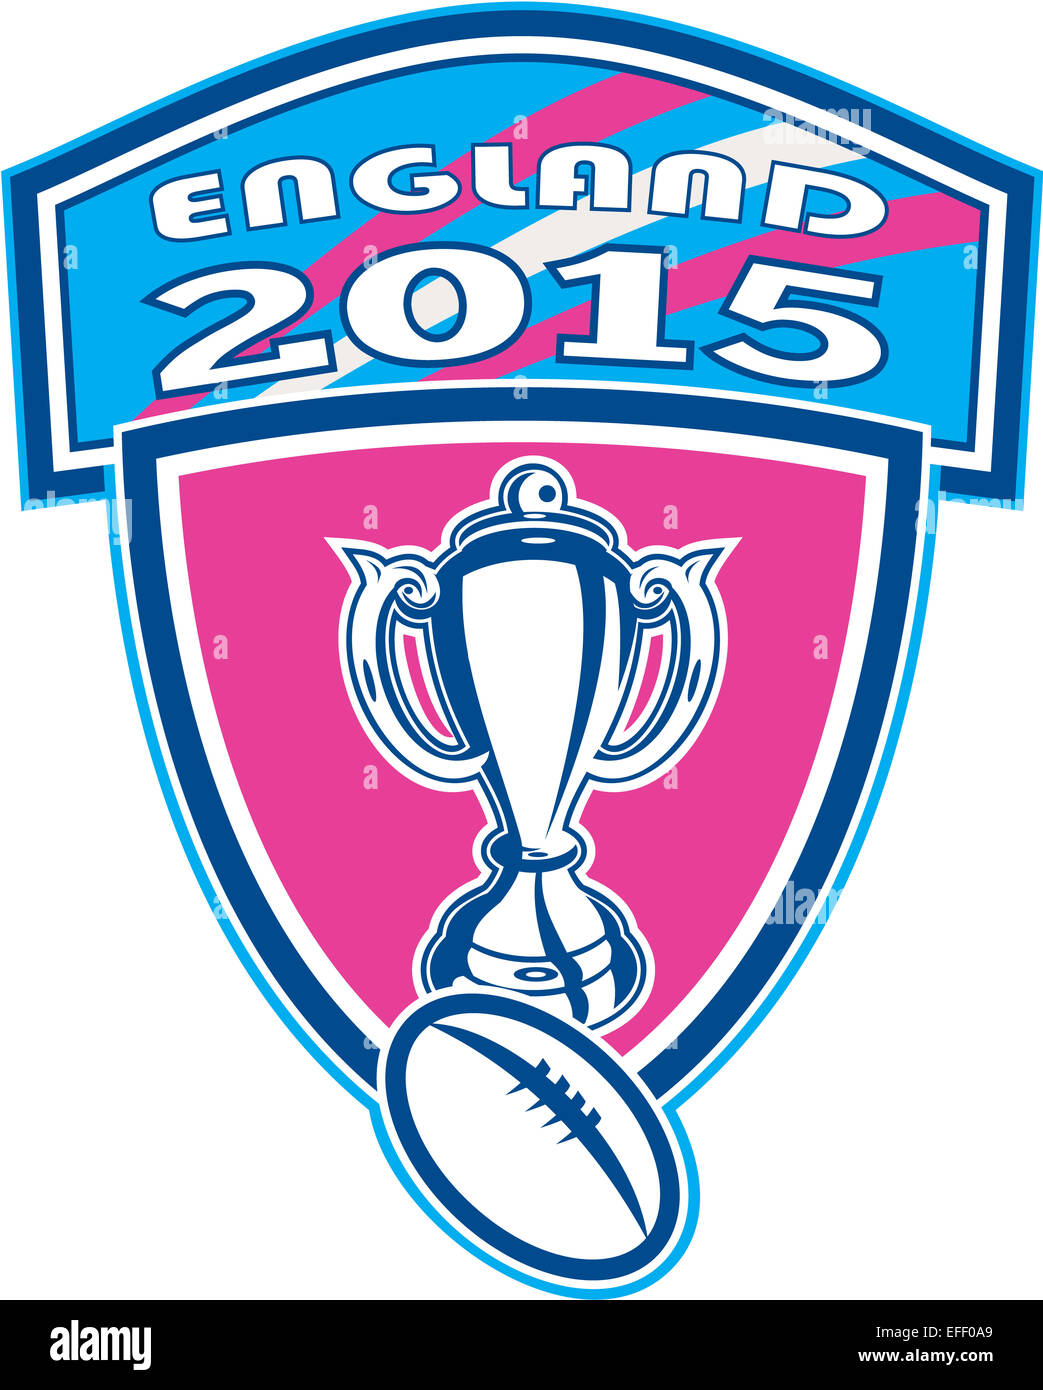 Illustrazione di Rugby Cup e la sfera insieme all'interno della protezione cresta con parole Inghilterra 2015 fatto in stile retrò. Foto Stock